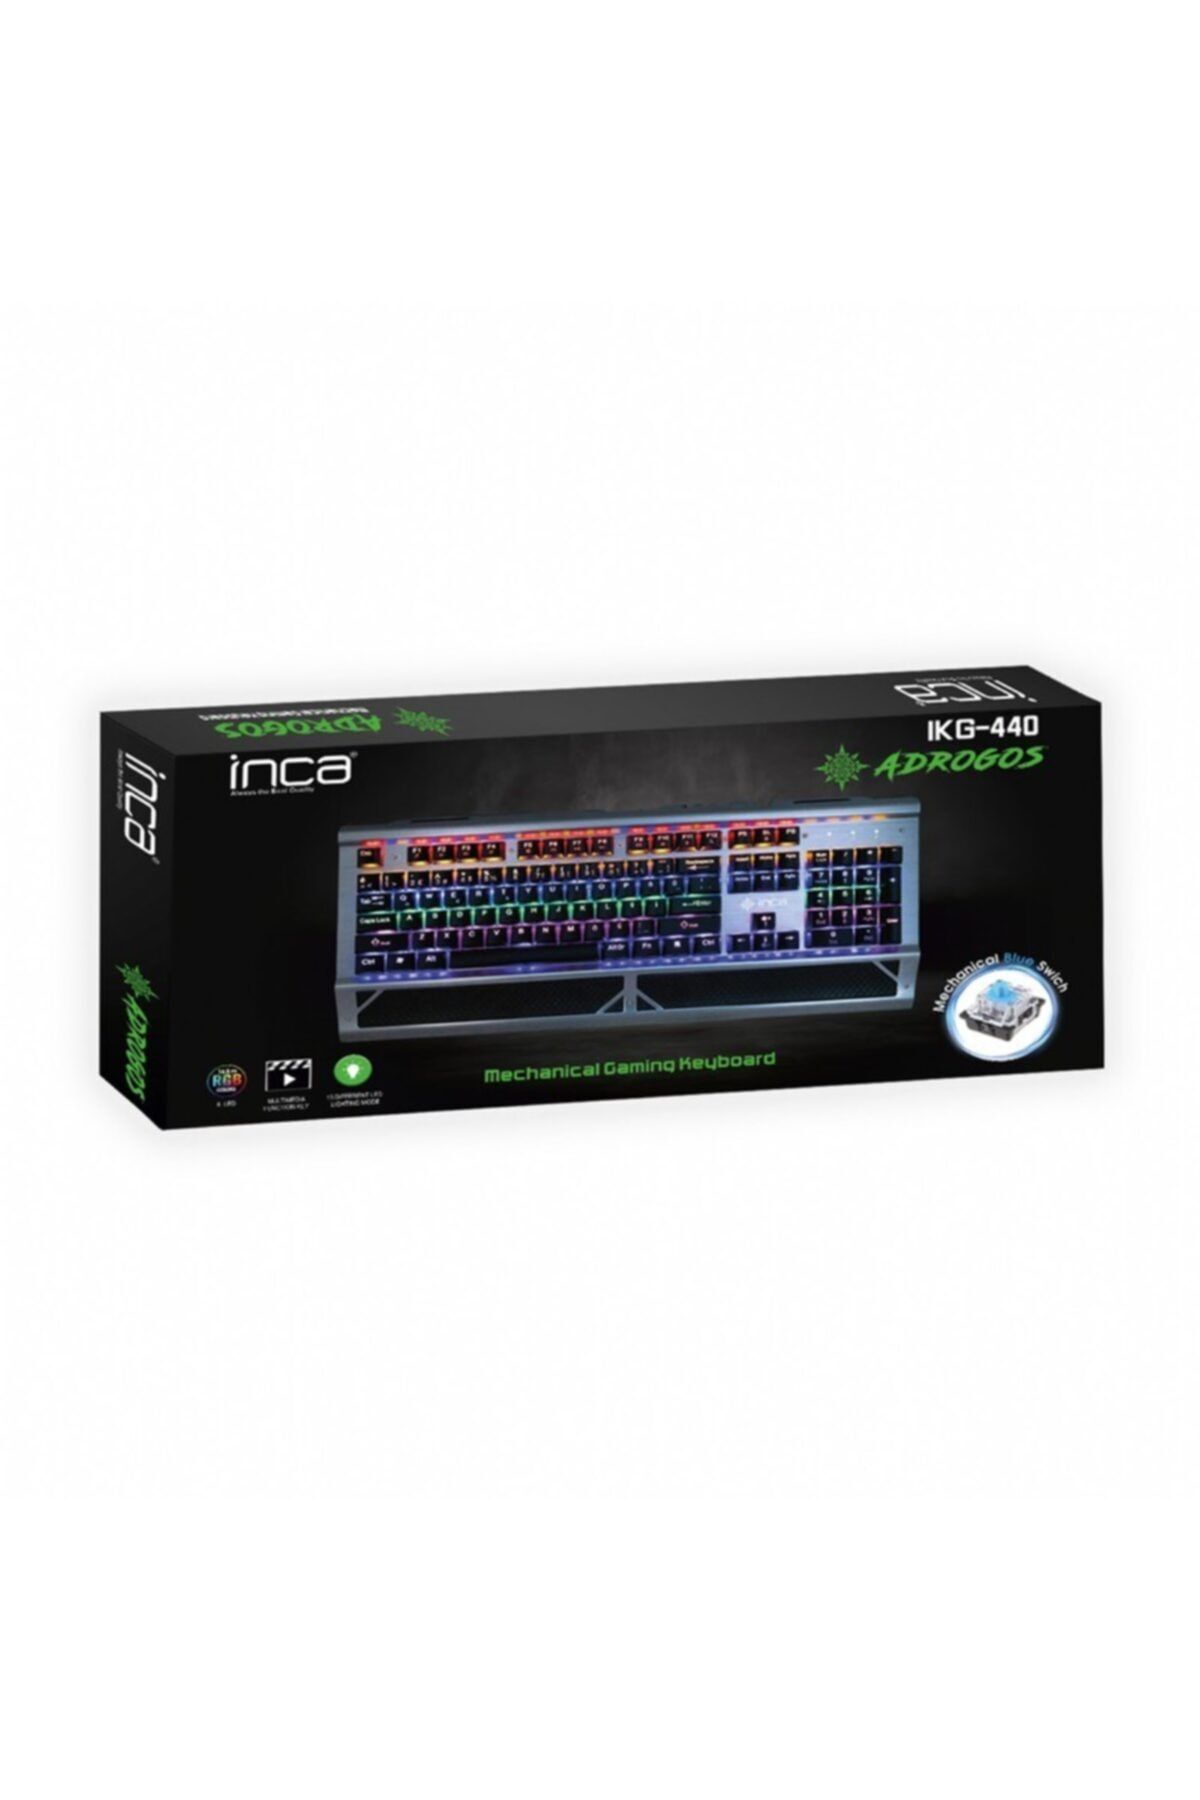 Inca Ophira Rgb Mekanik Gaming Keyboard Kablolu Klavye Ikg-440